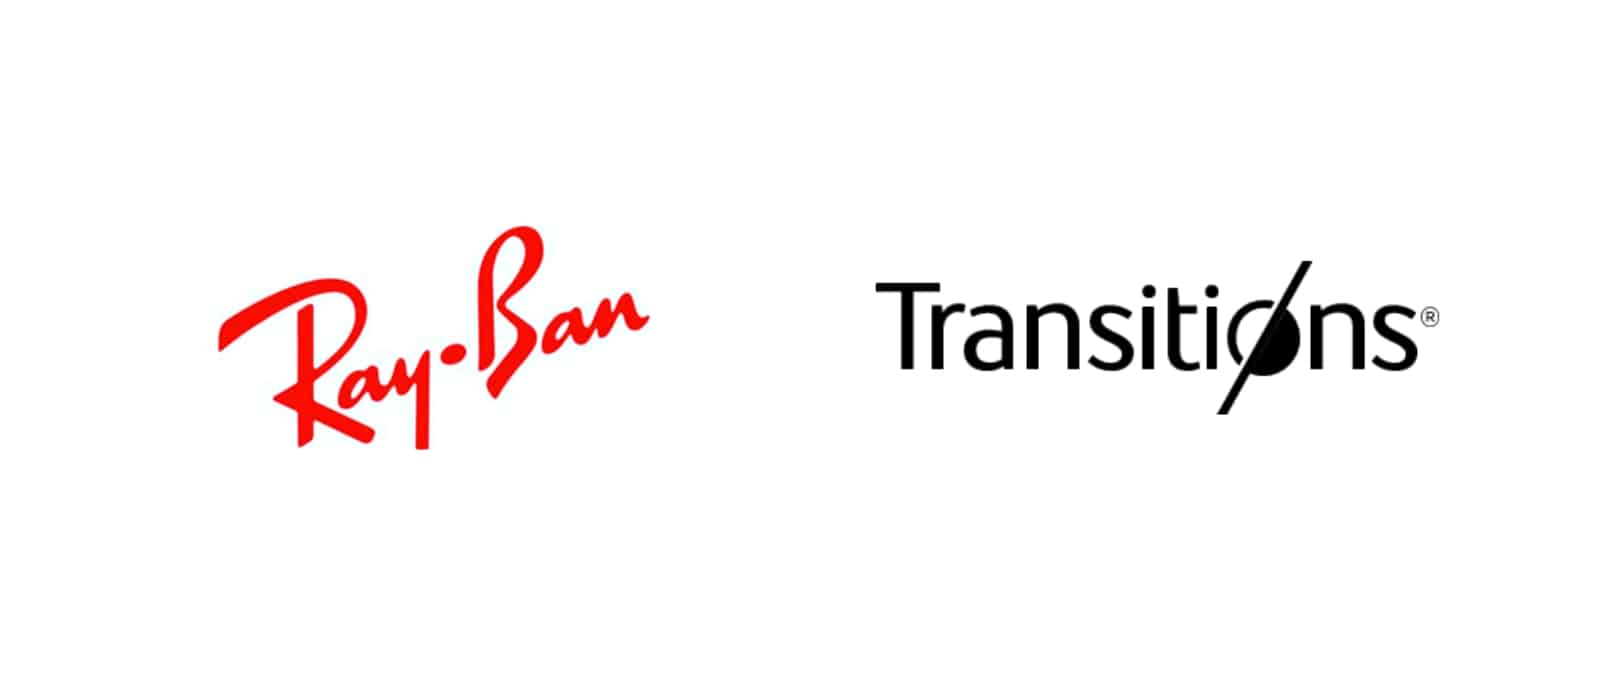 Ray-Ban Transitions